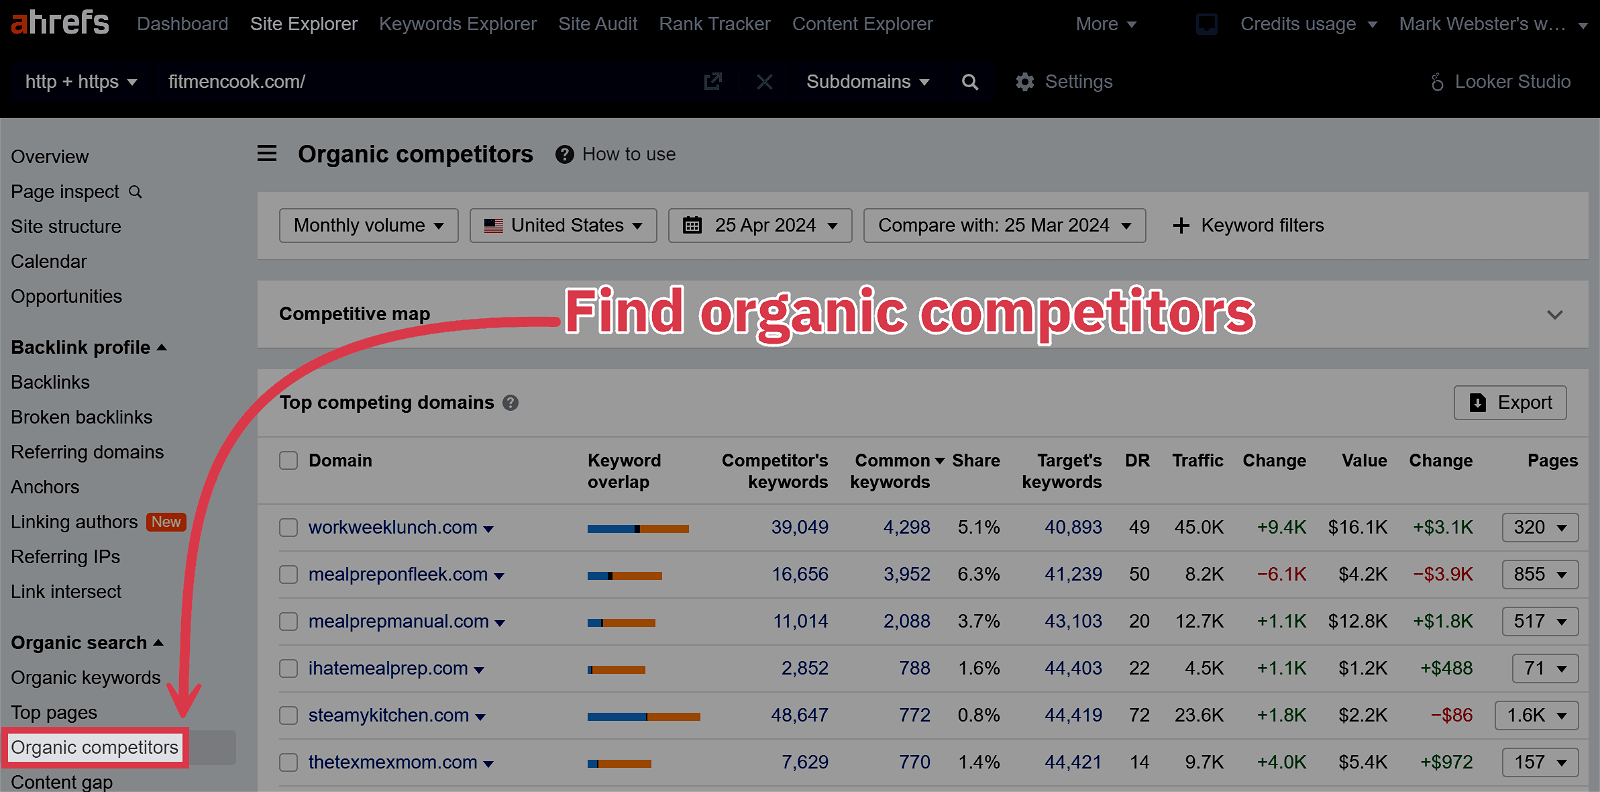 FitMenCook Organic Competitors